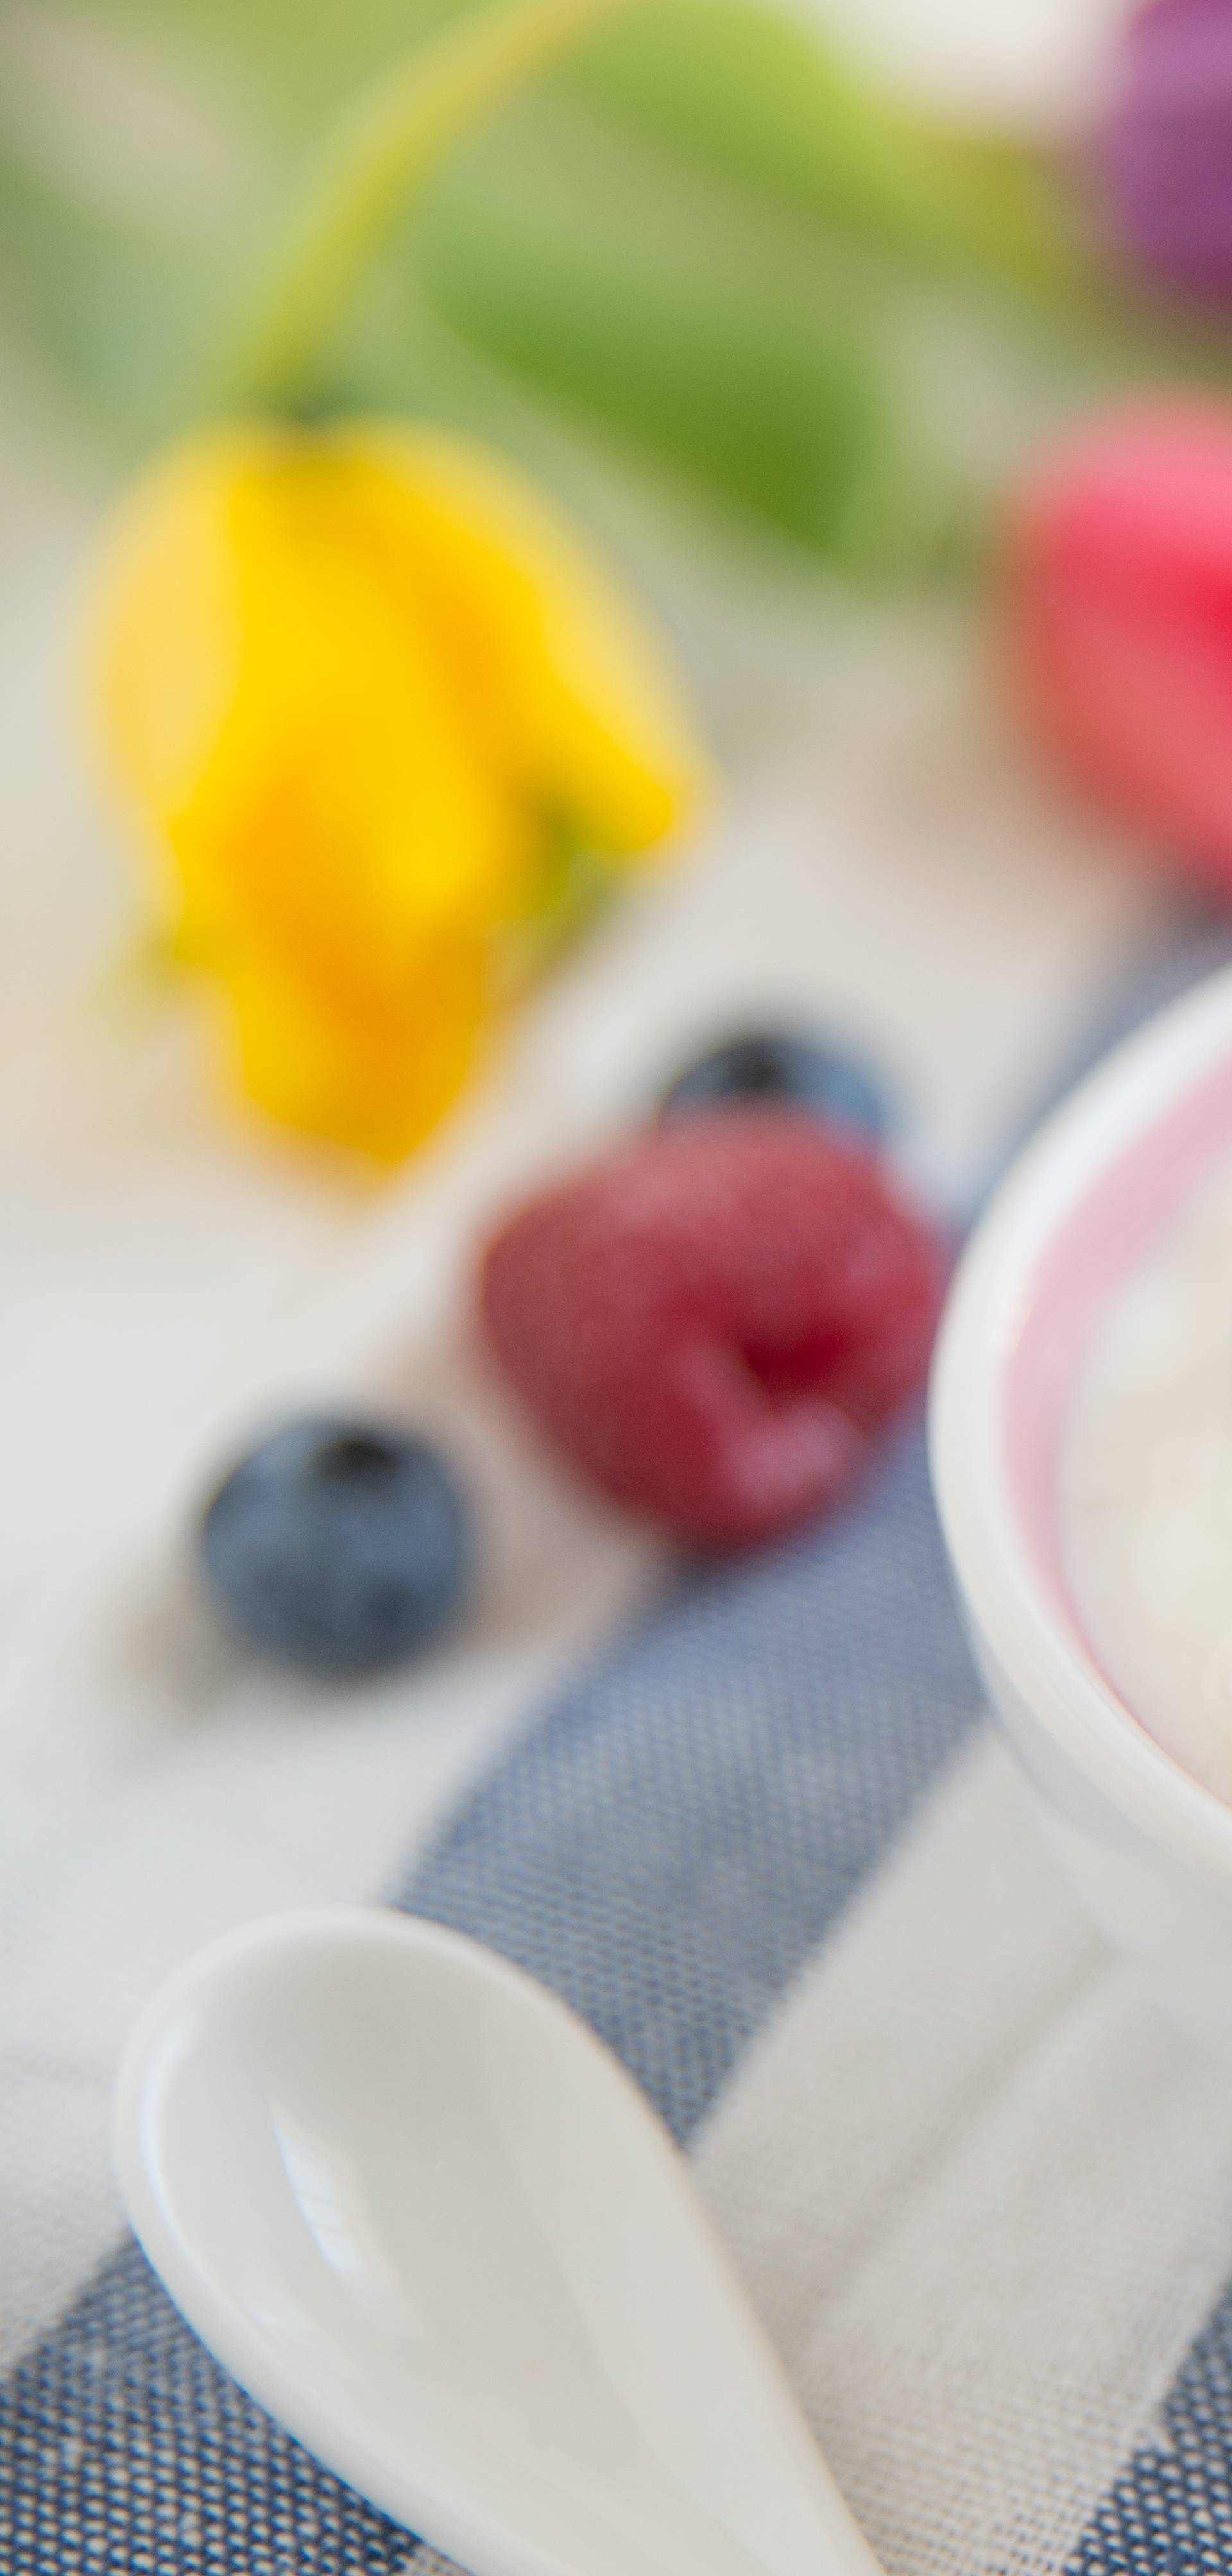 Šalica jogurta jača caklinu i smanjuje rizik od hipertenzije